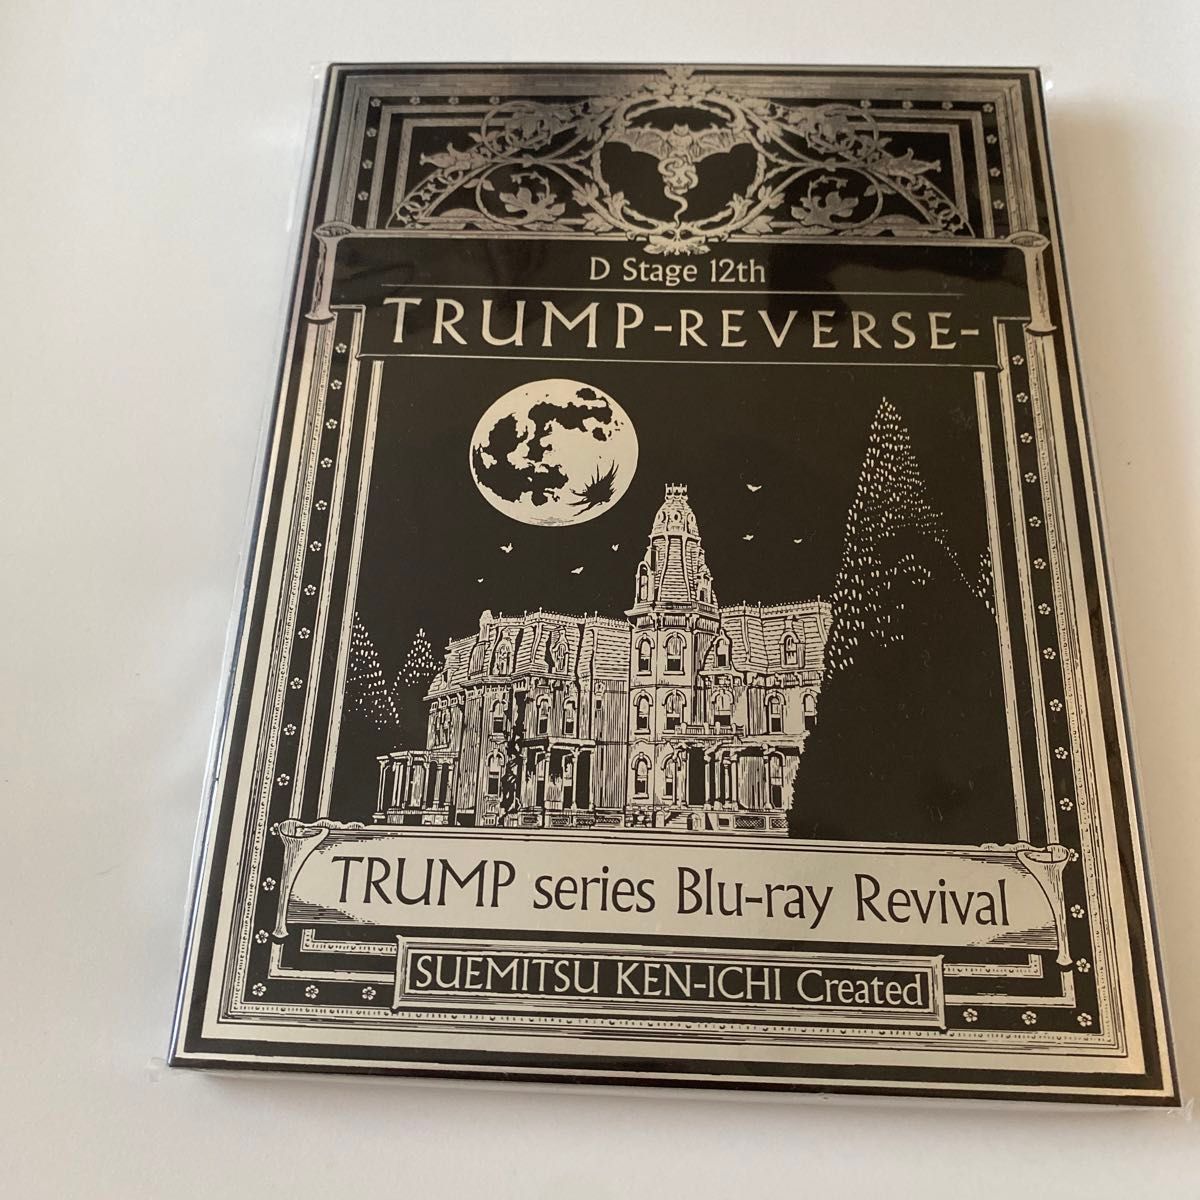 [国内盤ブルーレイ] TRUMP series Blu-ray Revival Dステ 12th 「TRUMP」 REVERSE